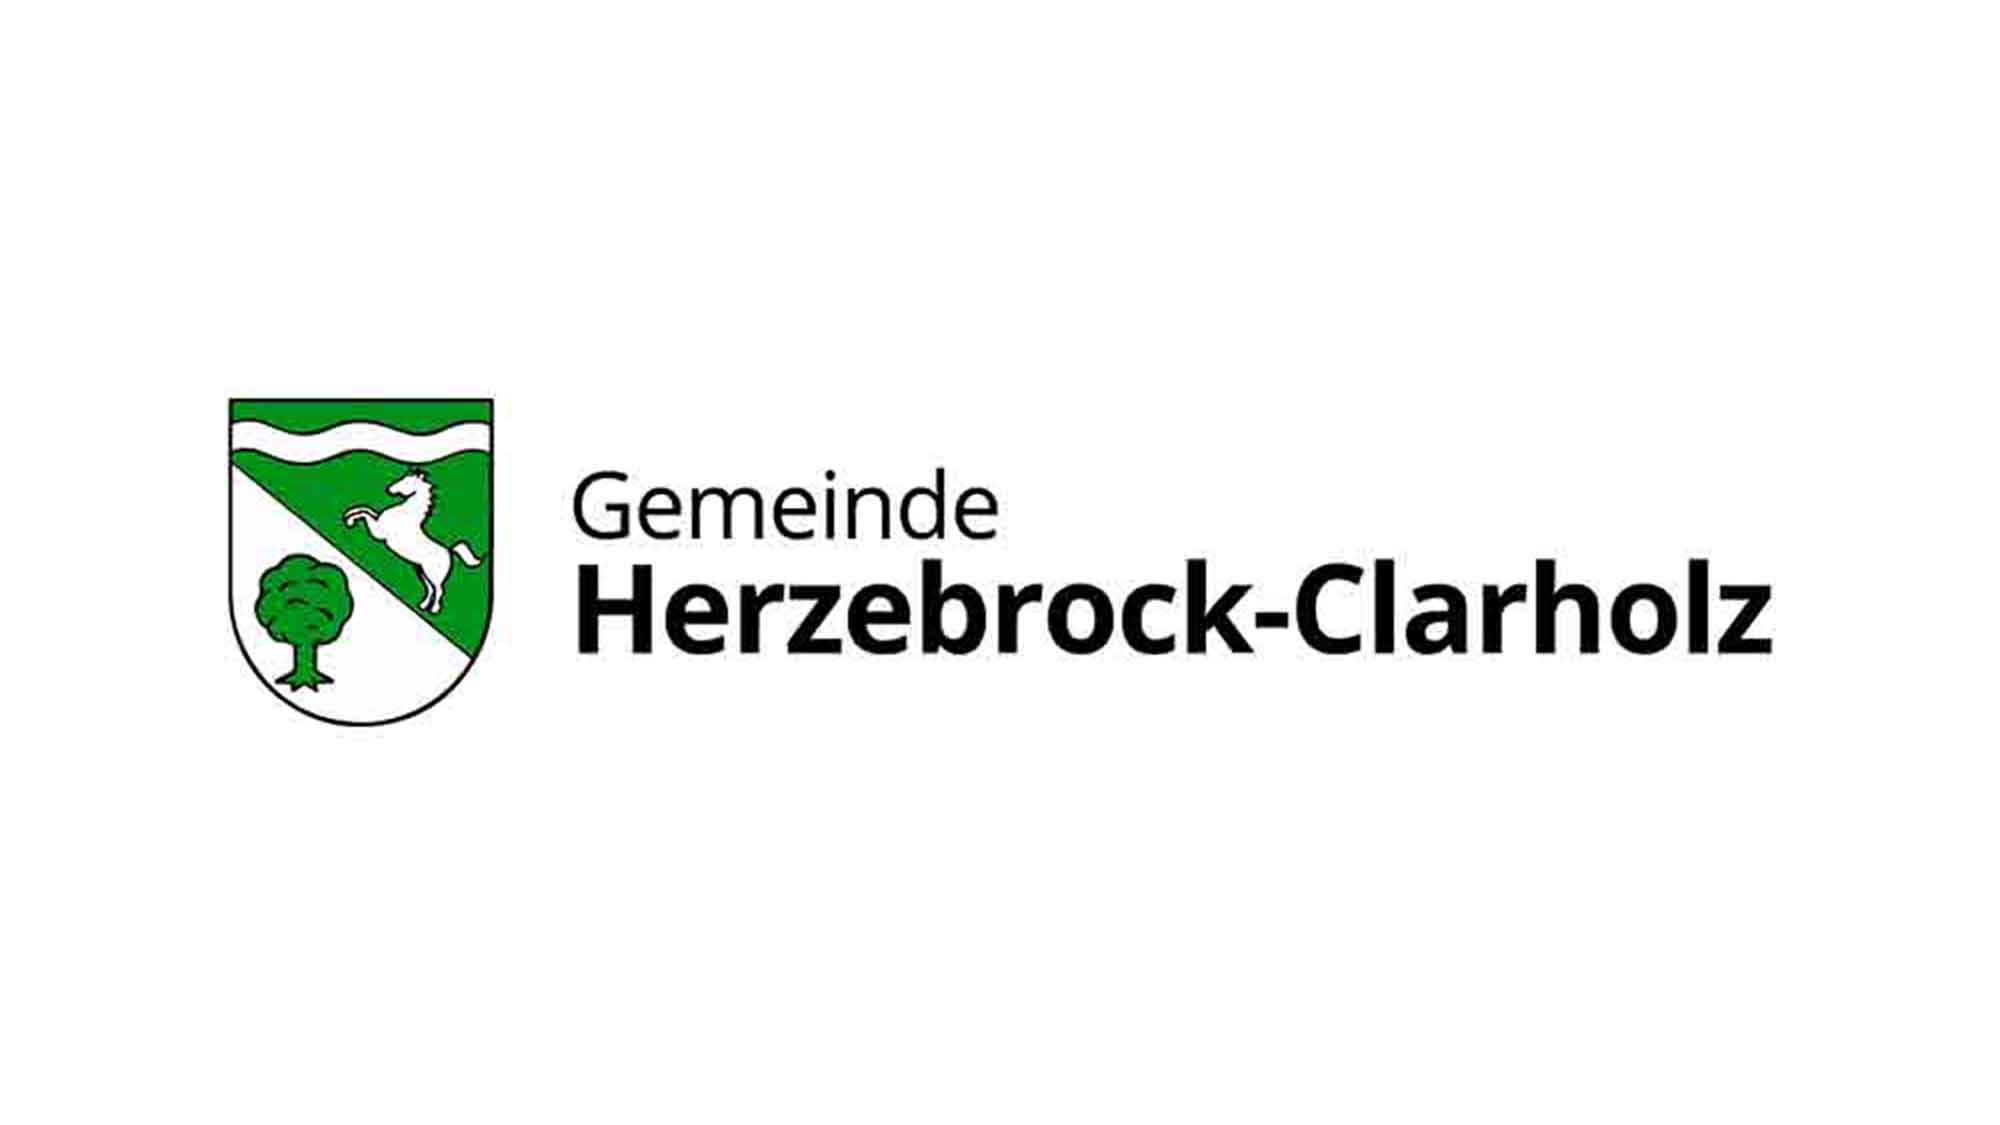 Herzebrock Clarholz: Jahresabrechnungen für den Wasserverbrauch und Abwasserverbrauch